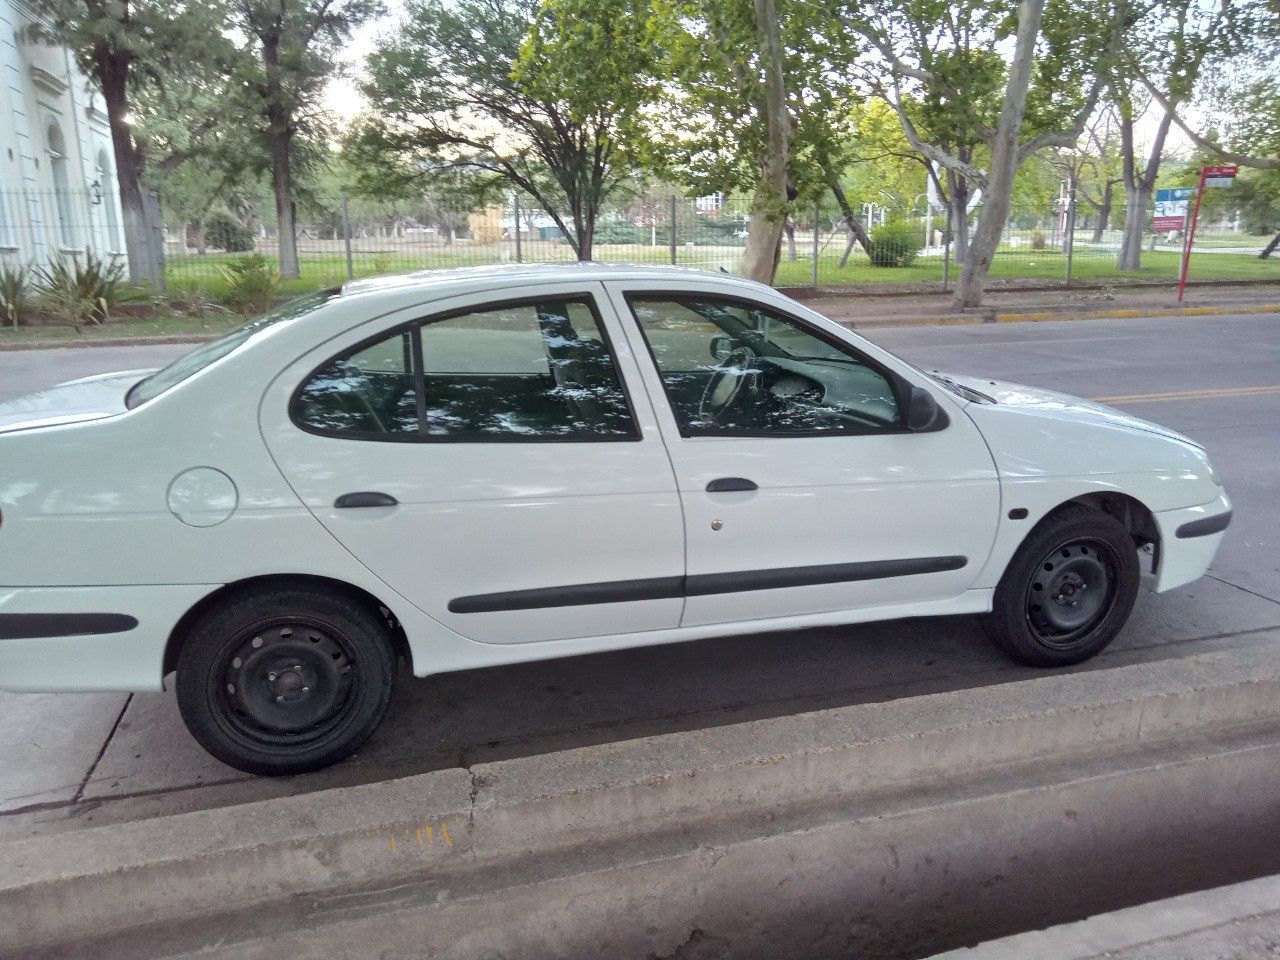 Renault Megane Usado en Mendoza, deRuedas